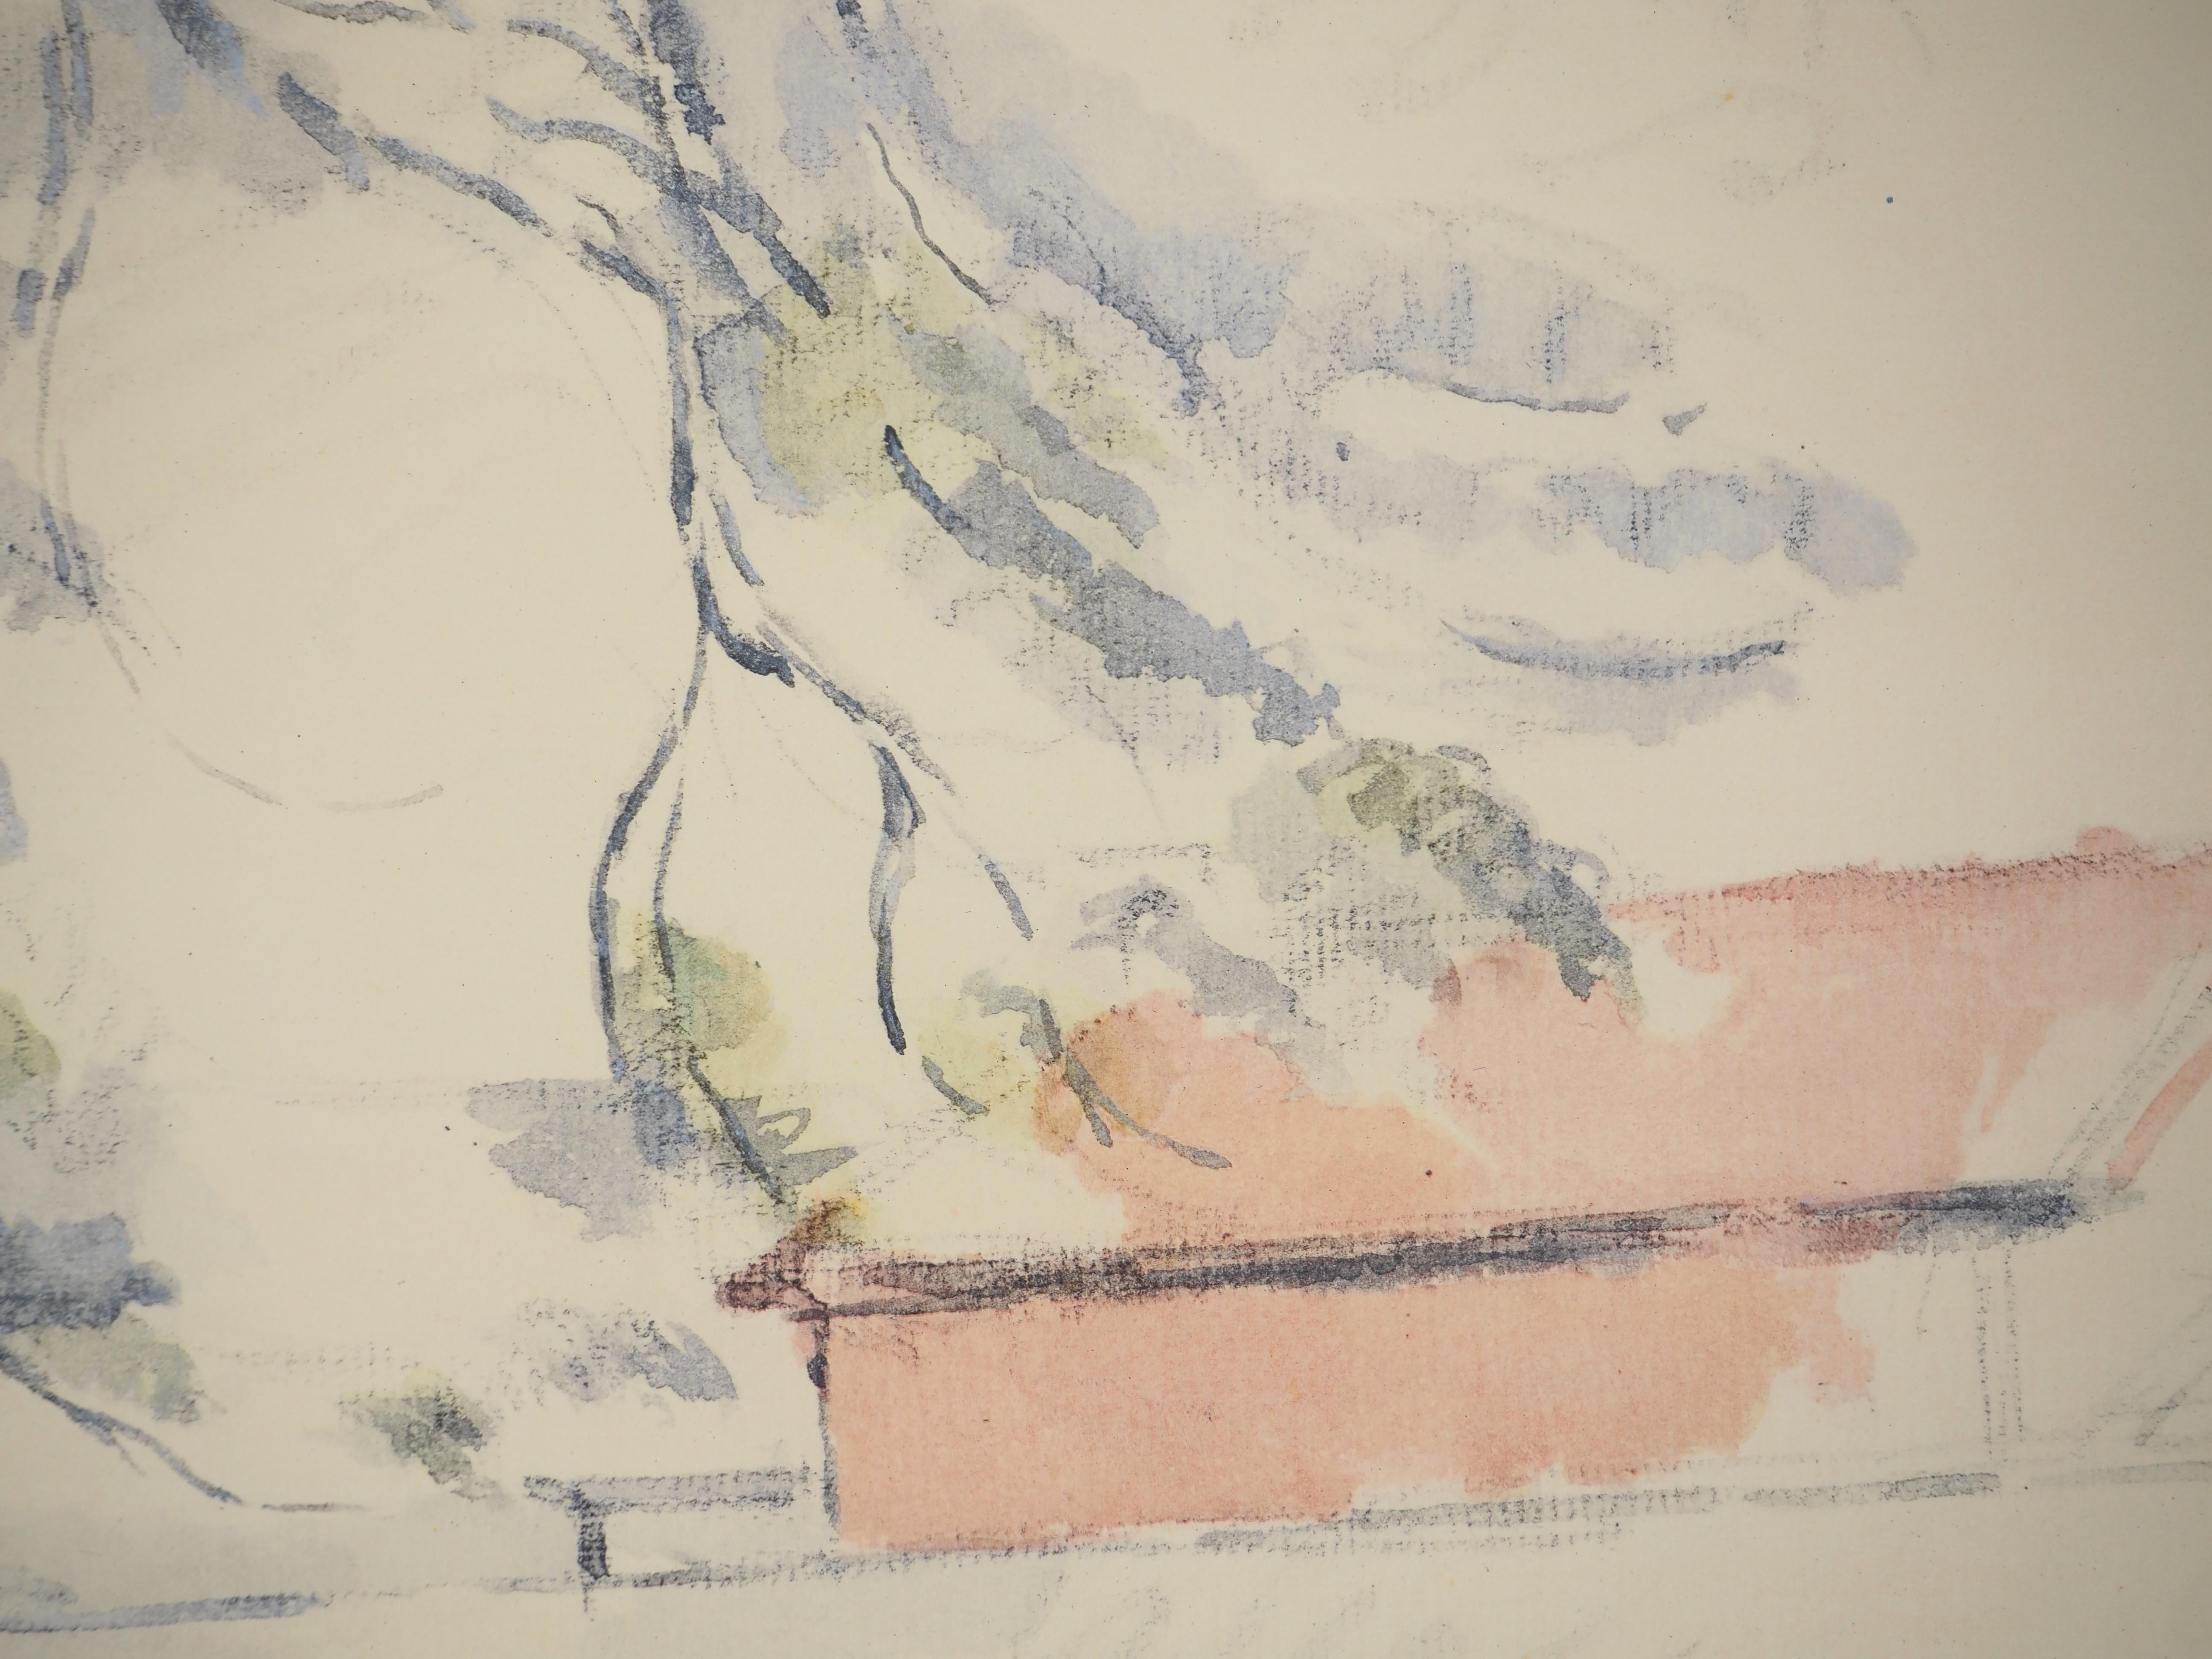 Paul Cezanne
Kleiner französischer Garten, 1971

Lithographie und Schablone (Werkstatt Jacomet)
Vorzeichenlos
Nummeriert / 225
Auf Papier, aufgetragen auf Arches Vellum 41,5 x 53,5 cm (ca. 16,5 x 21 Zoll)

INFORMATION : Diese Lithographie ist Teil